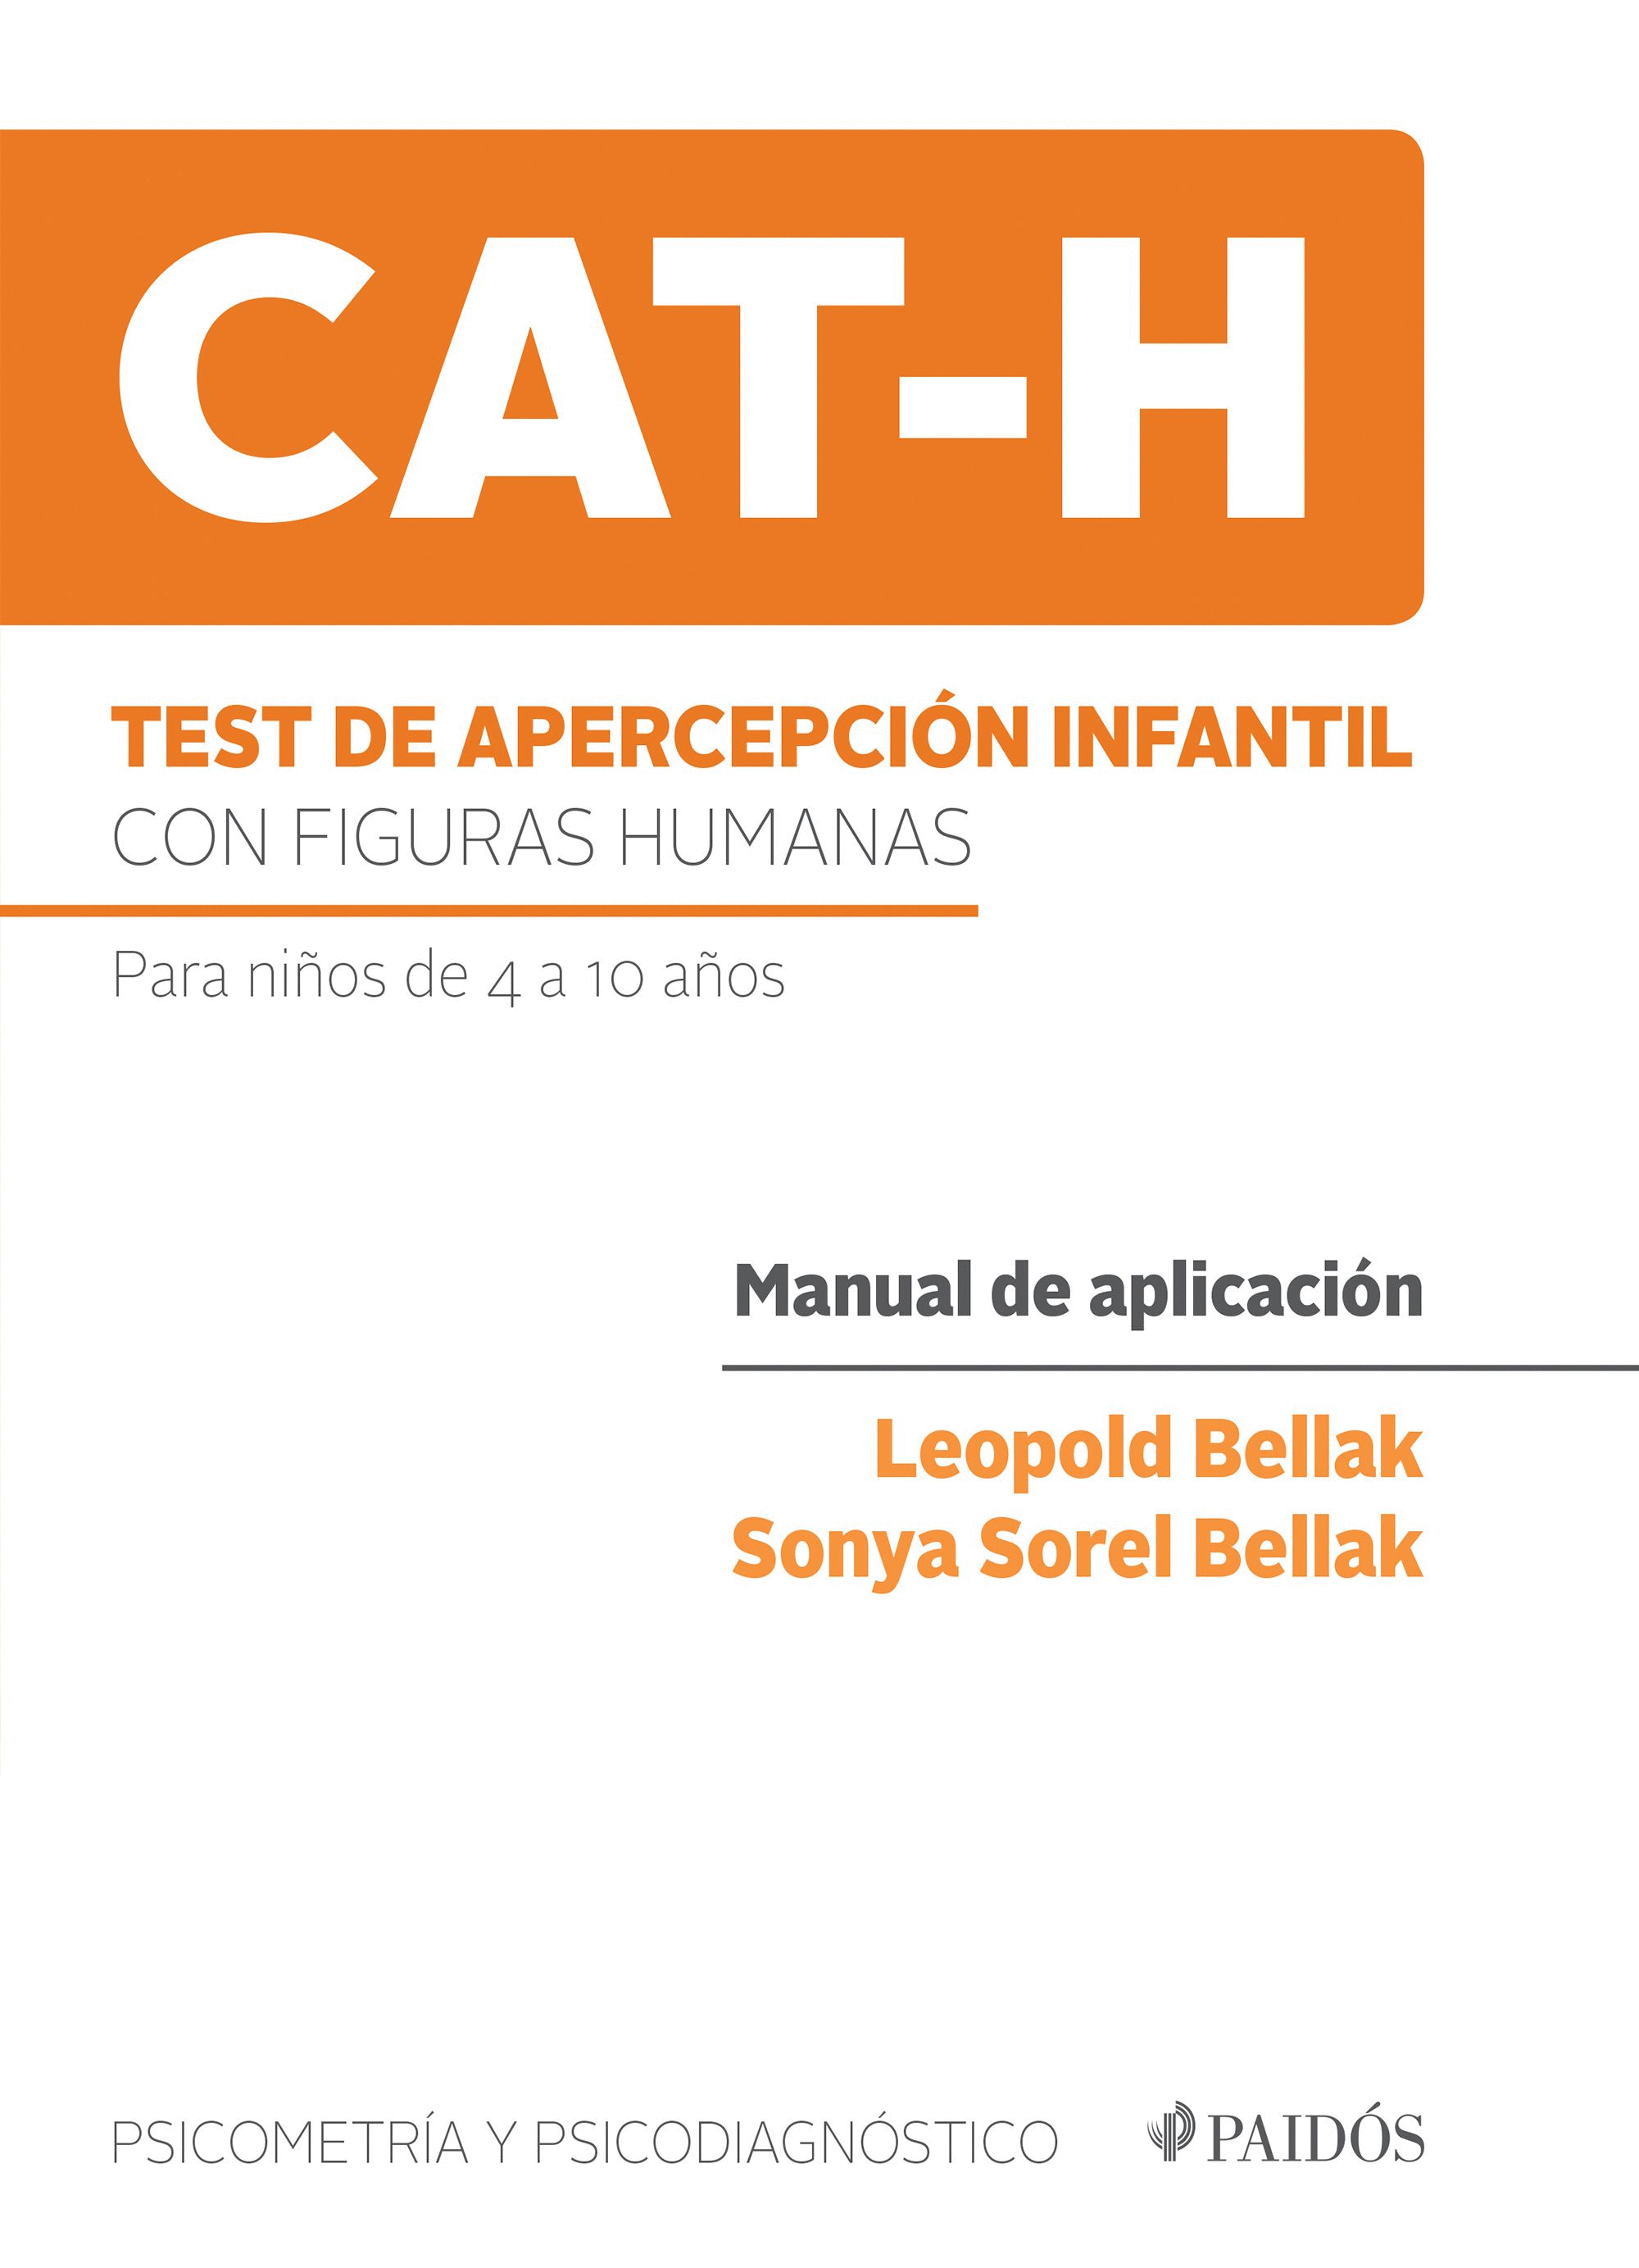 TEST DE APERCEPCIÓN INFANTIL CON FIGURAS HUMANAS (CAT-H)